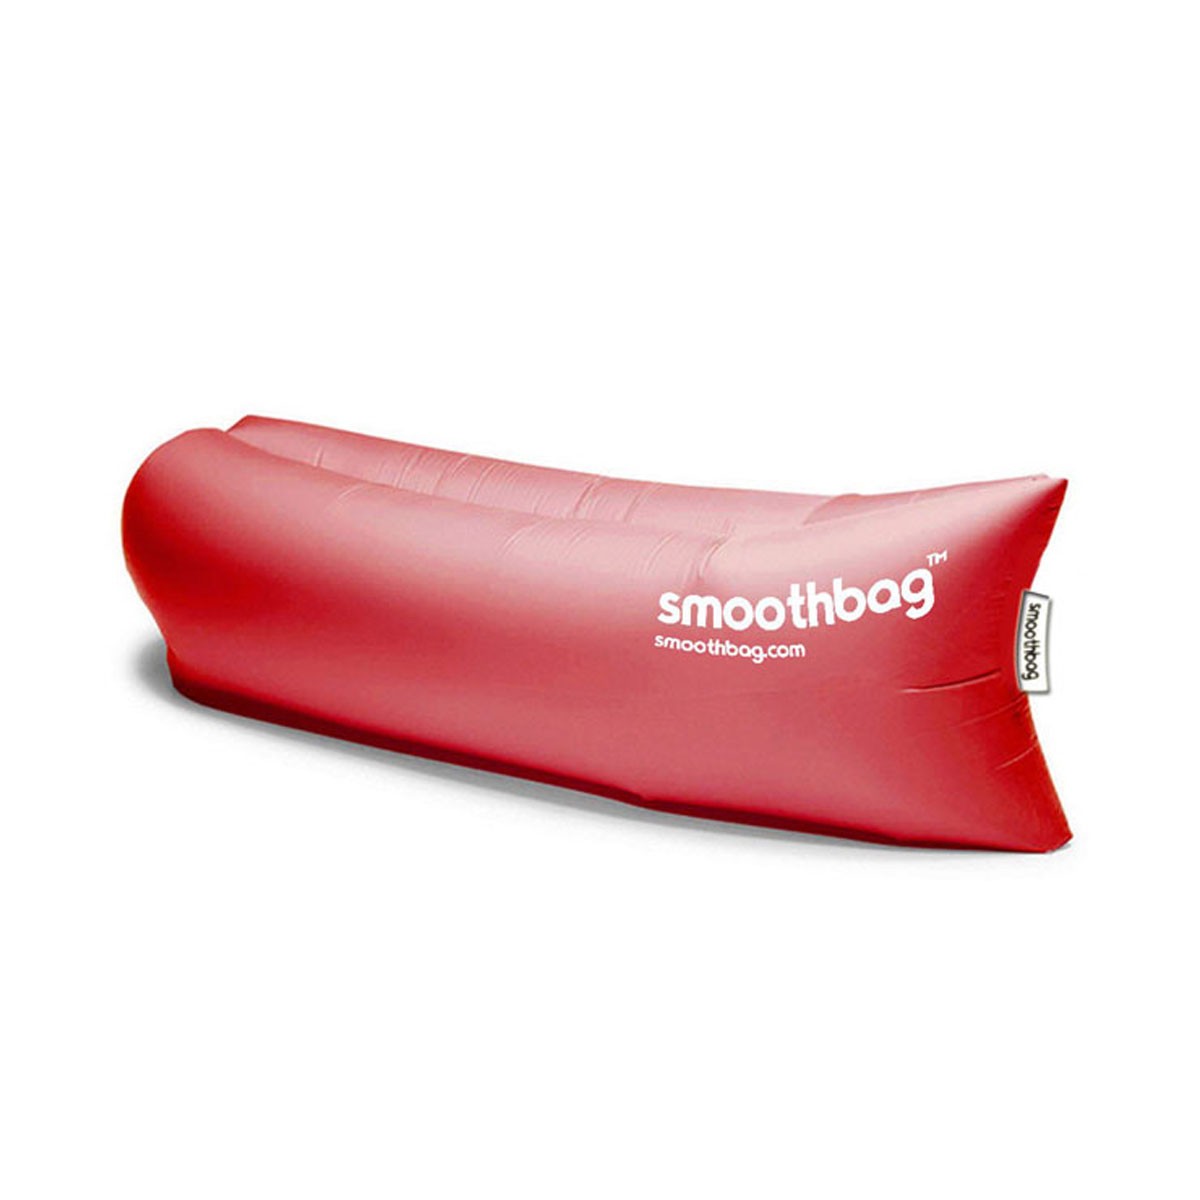 スムースバッグ smoothbag 正規品 アウトドア ソファー Smoothbag SB-RED Red